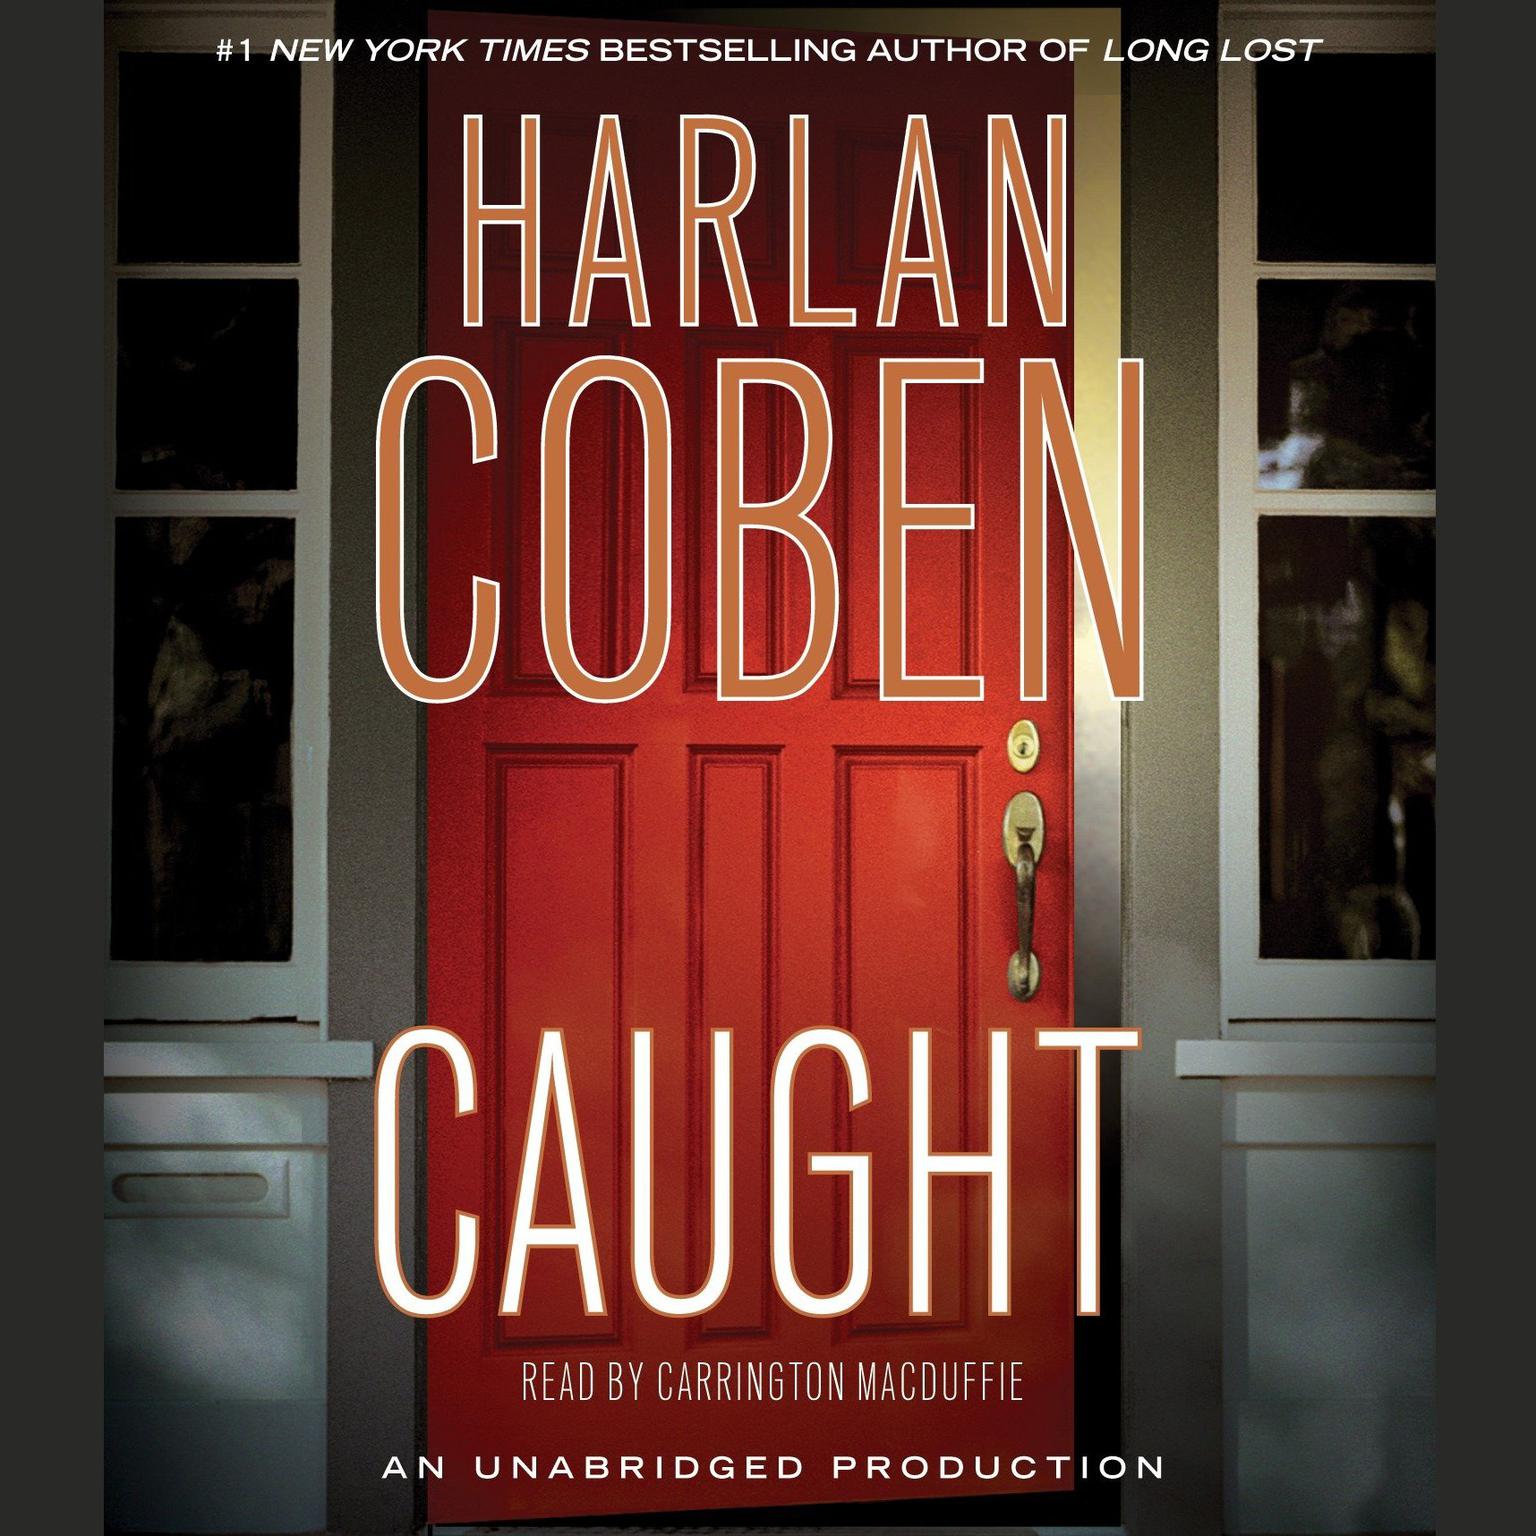 Caught Audiobook, by Harlan Coben